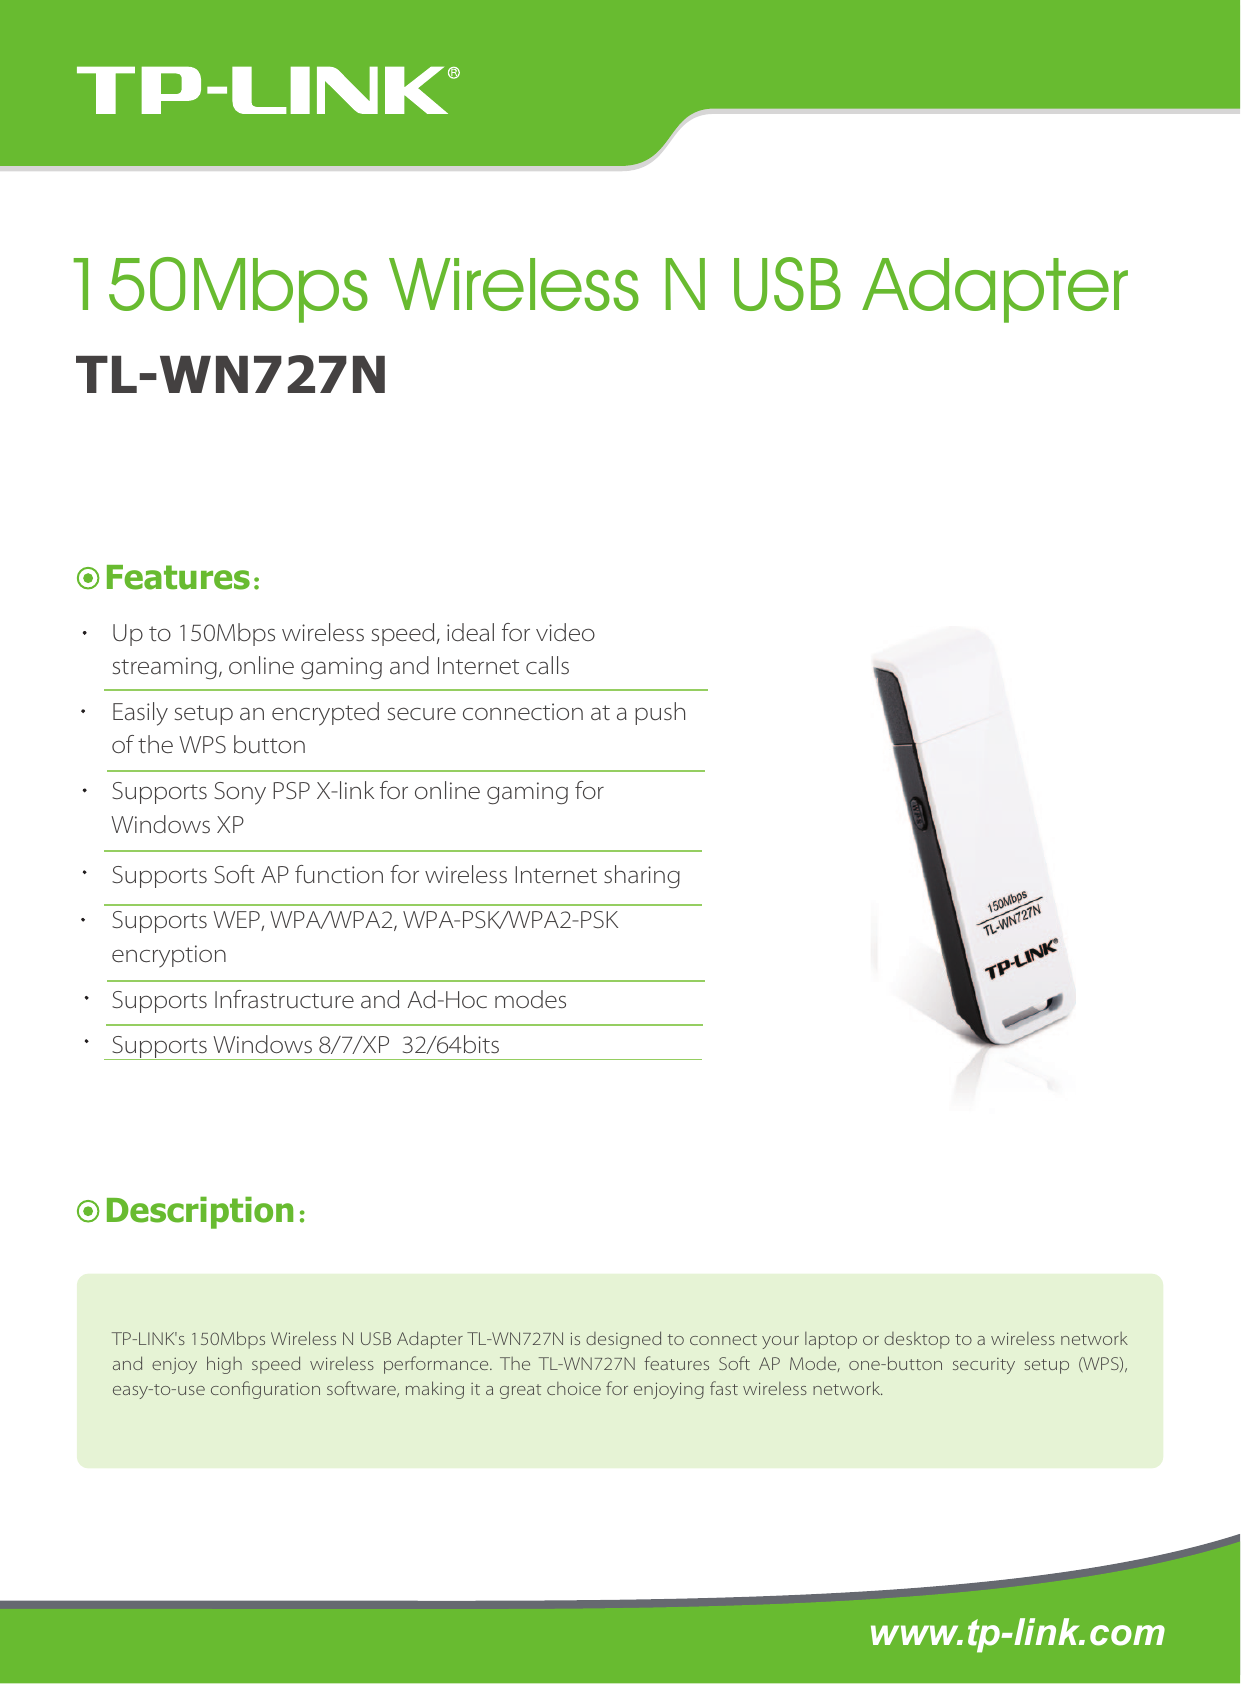 Tl link tl wn727n драйвер. TP-link TL-wn727n. Модем TP link TL wn727n. Wi-Fi адаптер TP-link TL-wn727n драйвер. Wireless Adapter TP-link TL-wn821n 300mbps Wireless n USB Adapter.